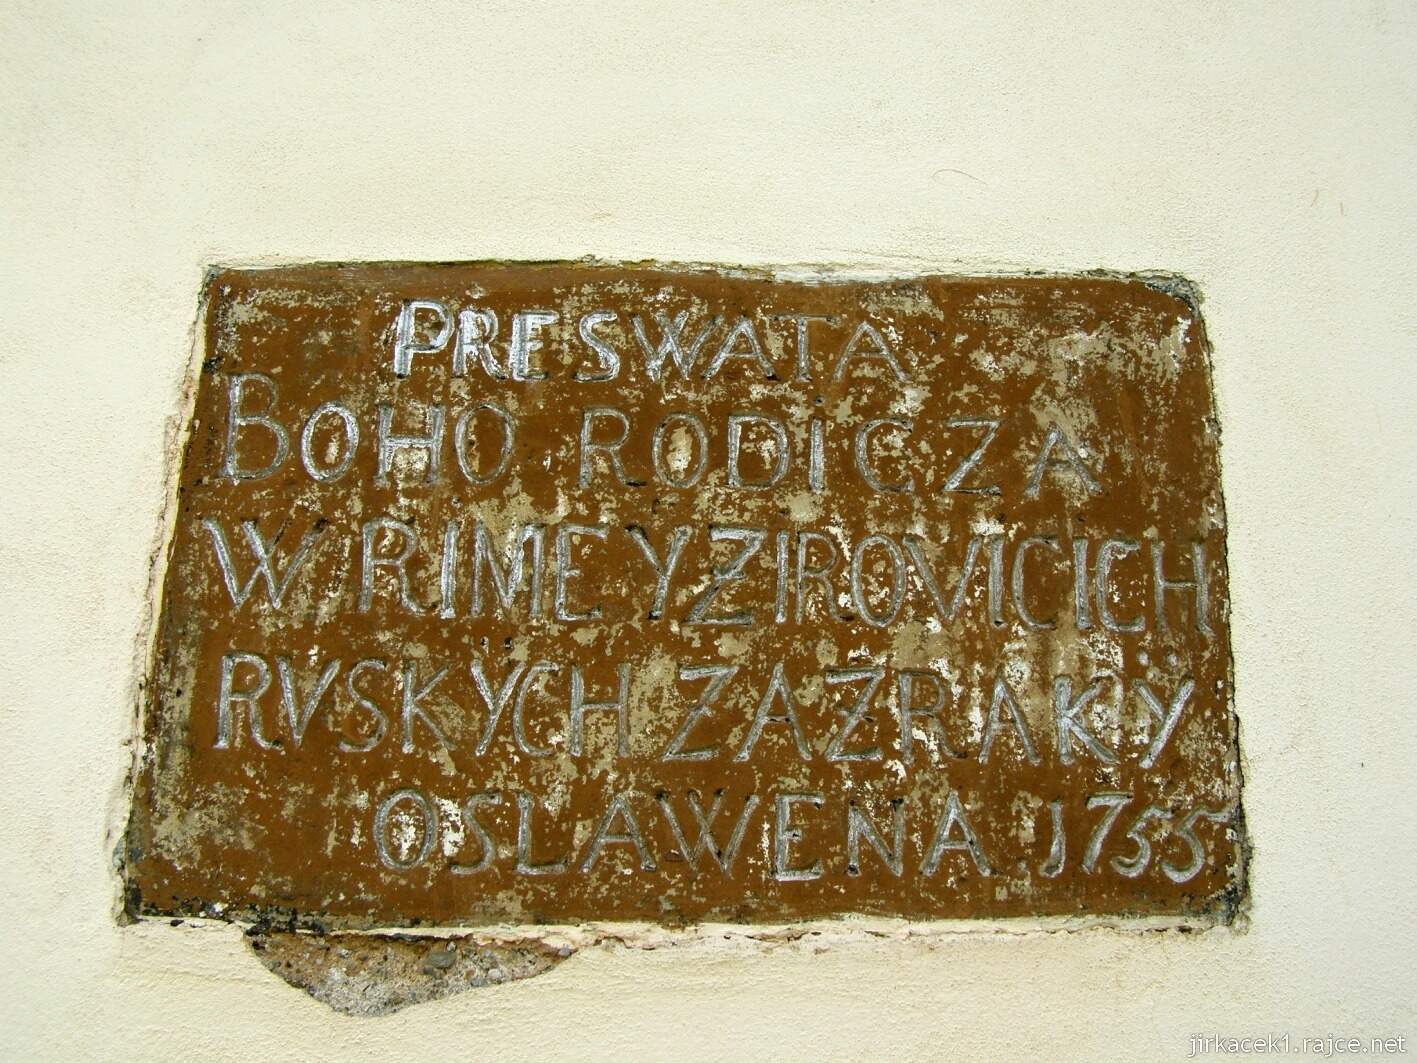 Velký Týnec - kaple Panny Marie - pamětní deska - PRESWATA BOHO RODICZA W RIME Y ZIROVICICH RVSKYCH ZAZRAKY OSLAWE 1755